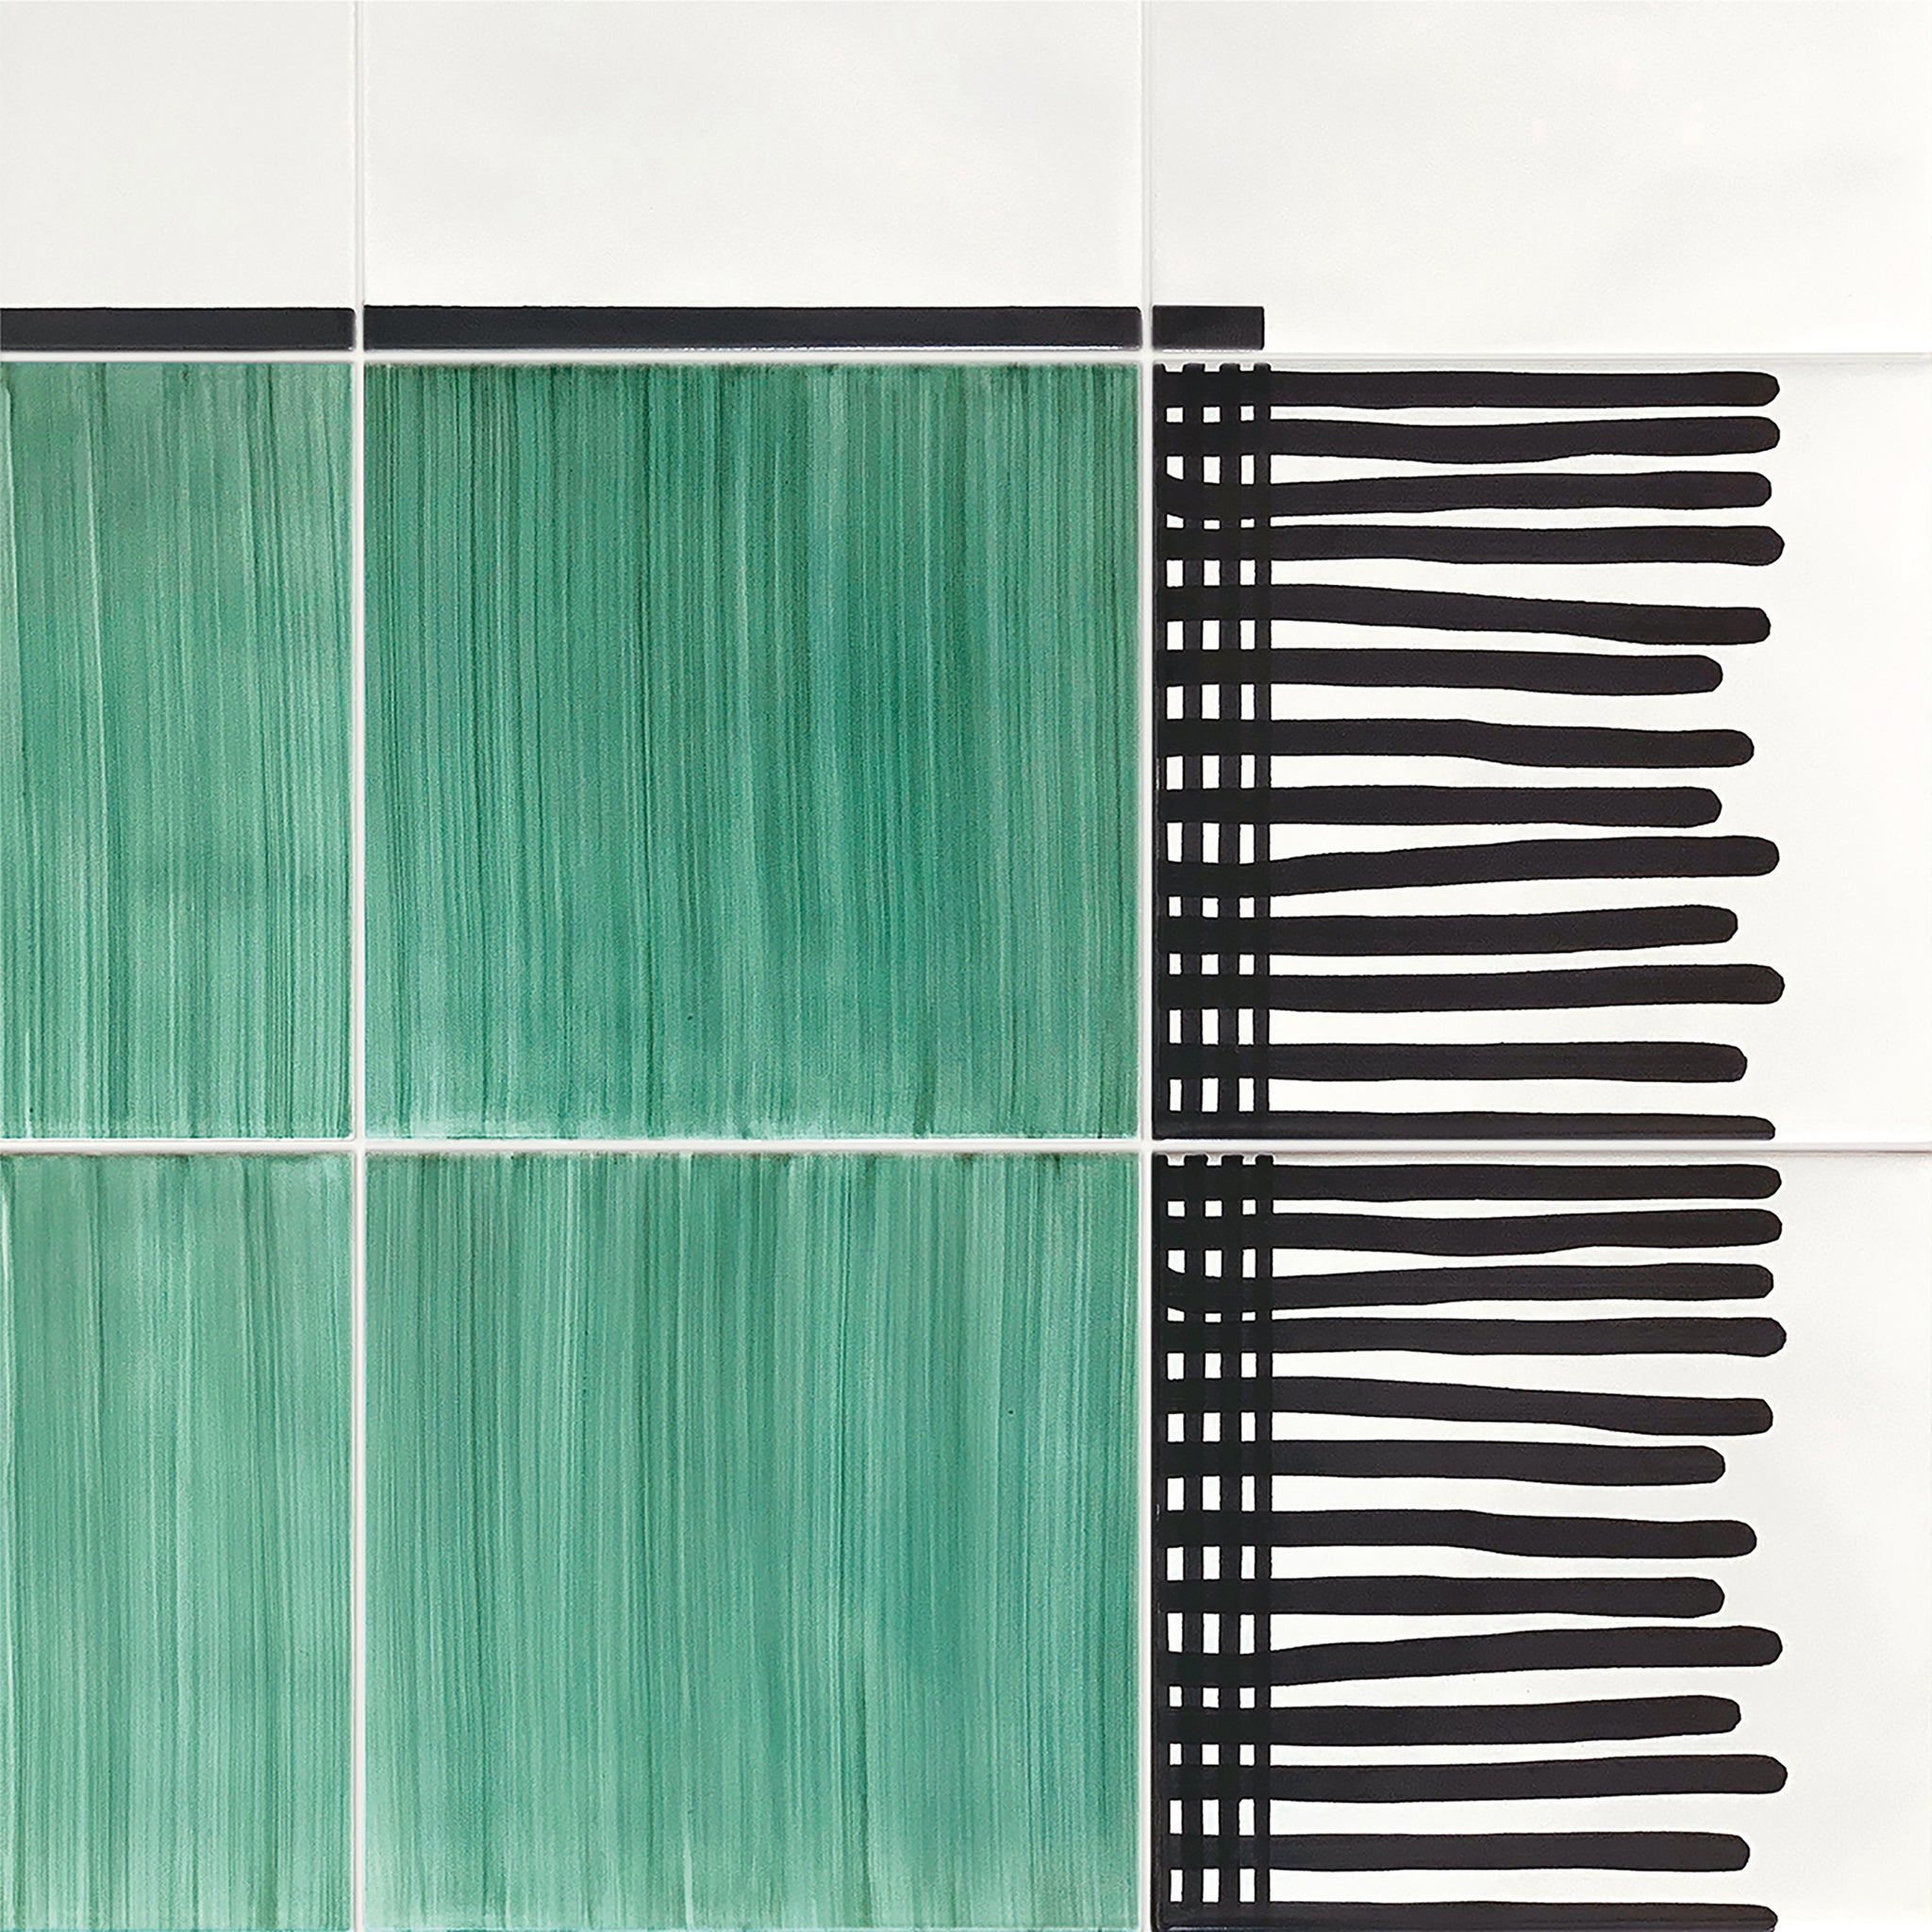 Carpet Green and Black & White Ceramic Composition by Giuliano Andrea dell’Uva 160 x 80 - Alternative view 2